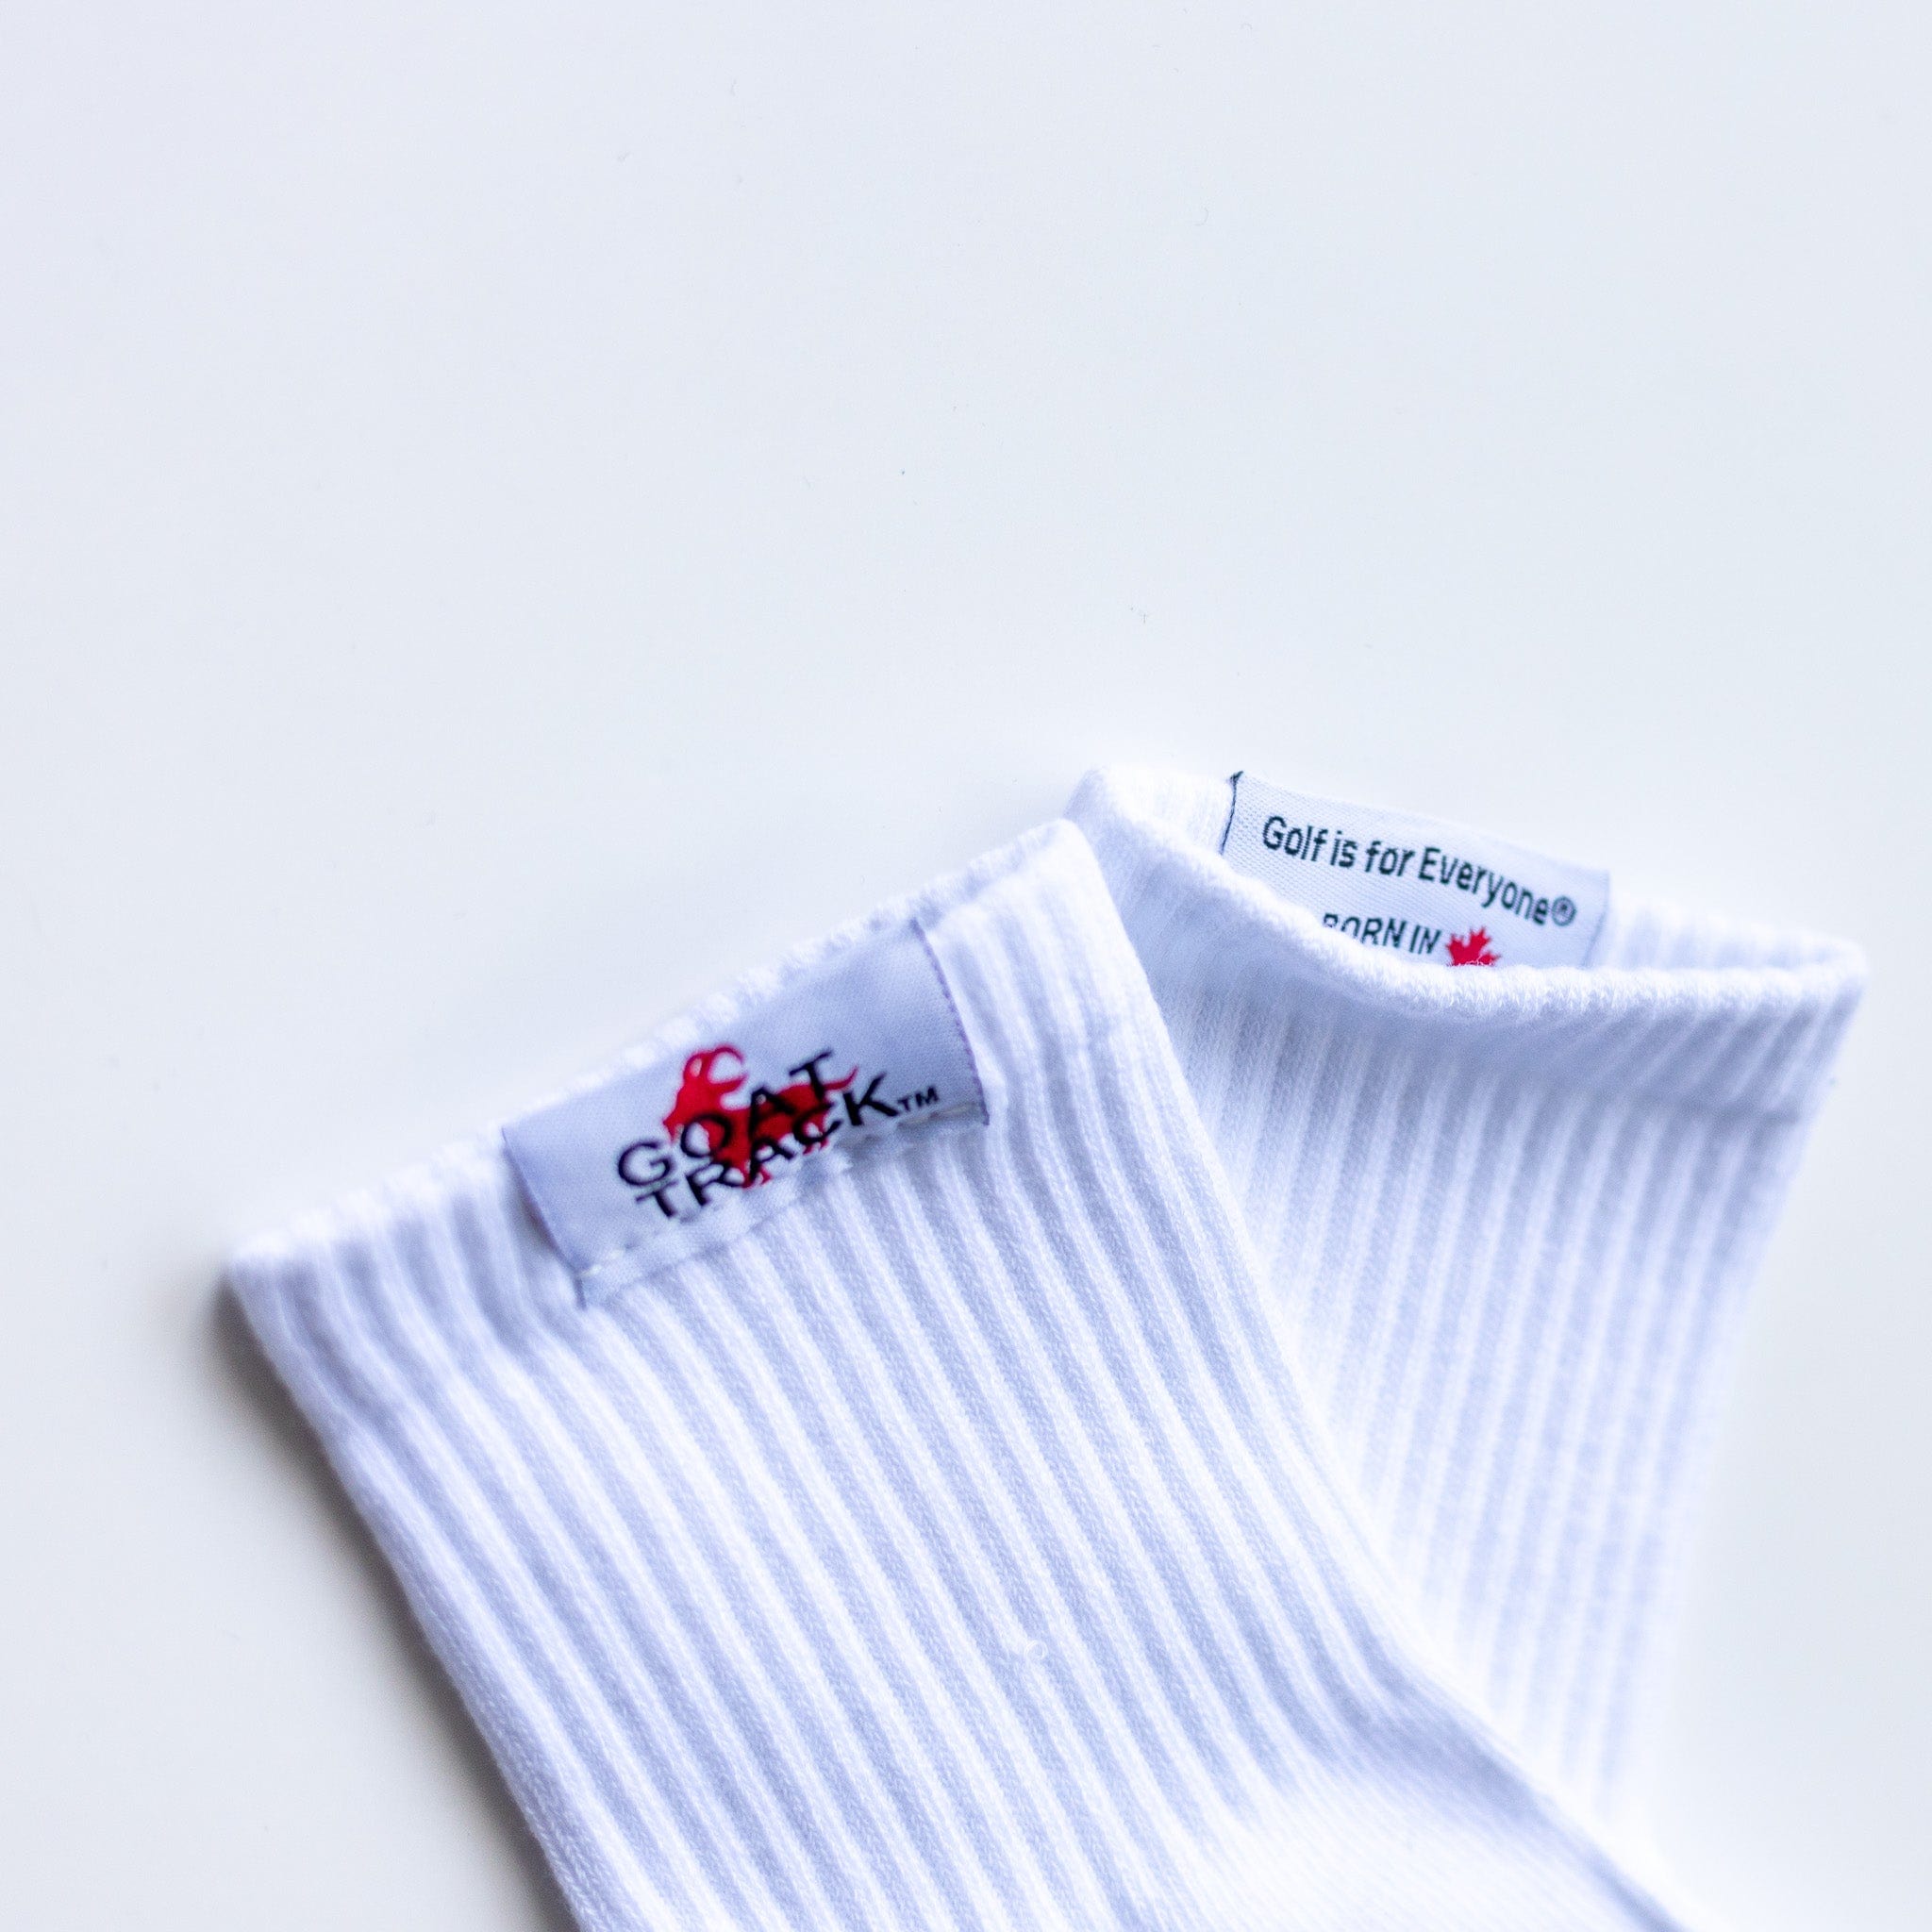 GT Mid Cut Socks socks Canada-Golf-Lifestyle-Clothing-Brand